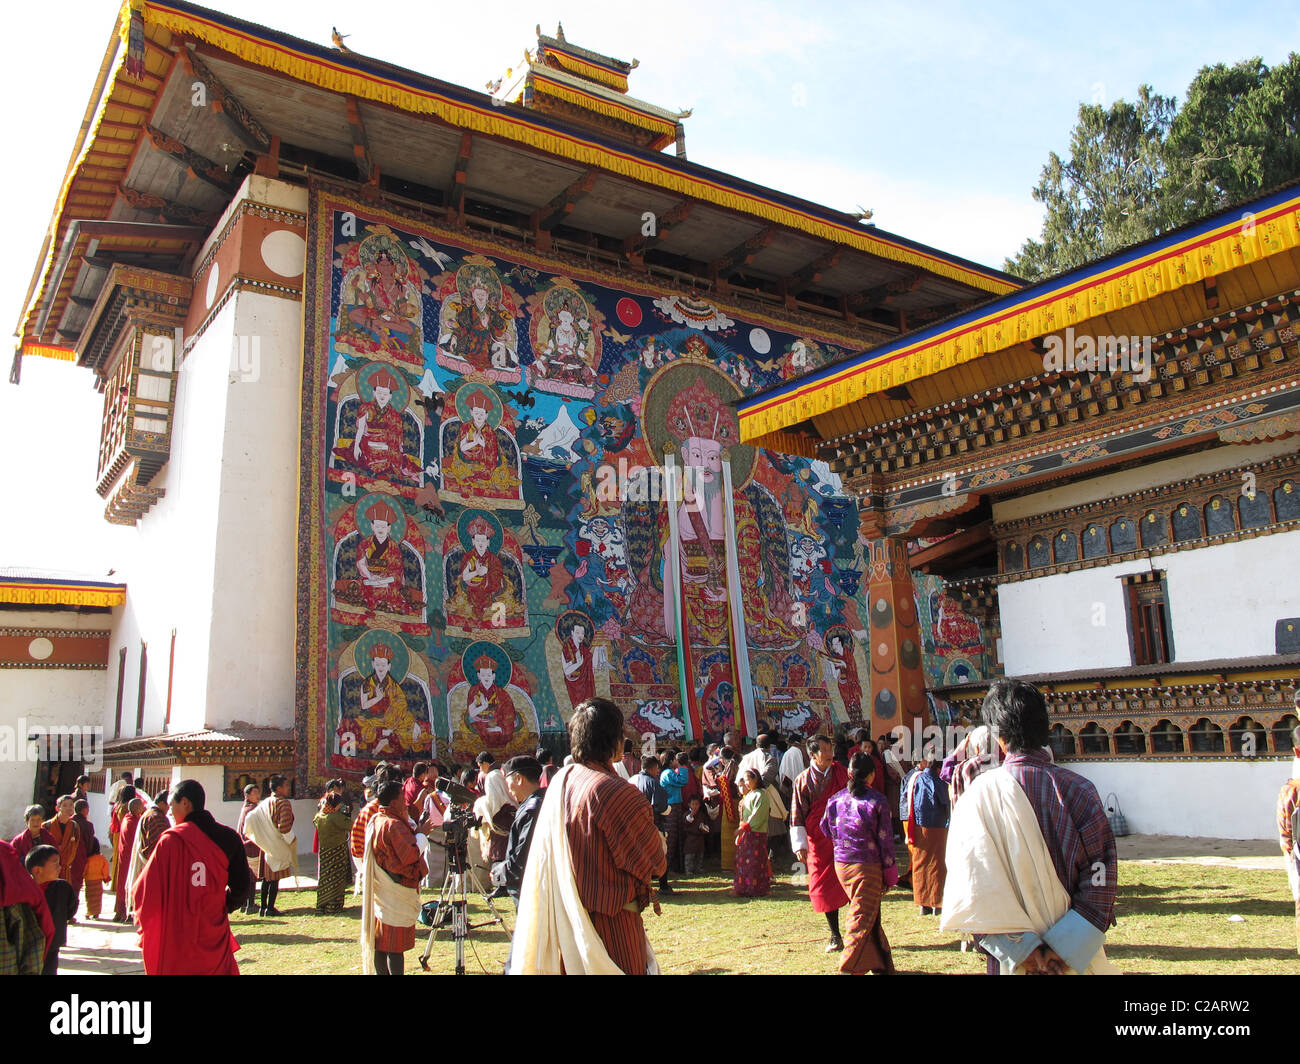 Huge thanka at the Talo festival, Talo monastery, Bhutan Stock Photo